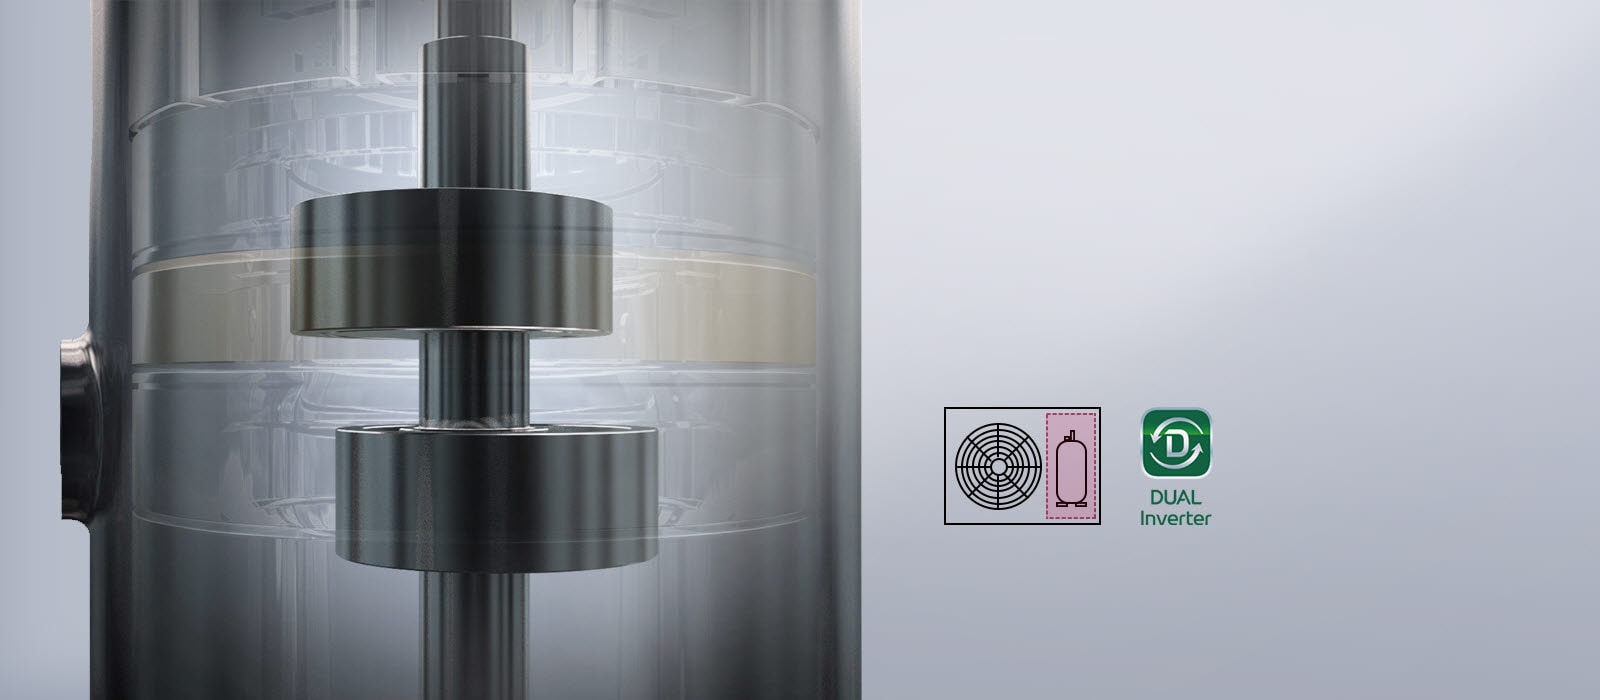 Unutarnji rad tehnologije DUAL Inverter Compressor vidljiv je kroz gotovo nevidljivu vanjsku stranu. U blizini je logotip DUAL Inverter i dvije ikone koje predstavljaju ventilator i kompresor.